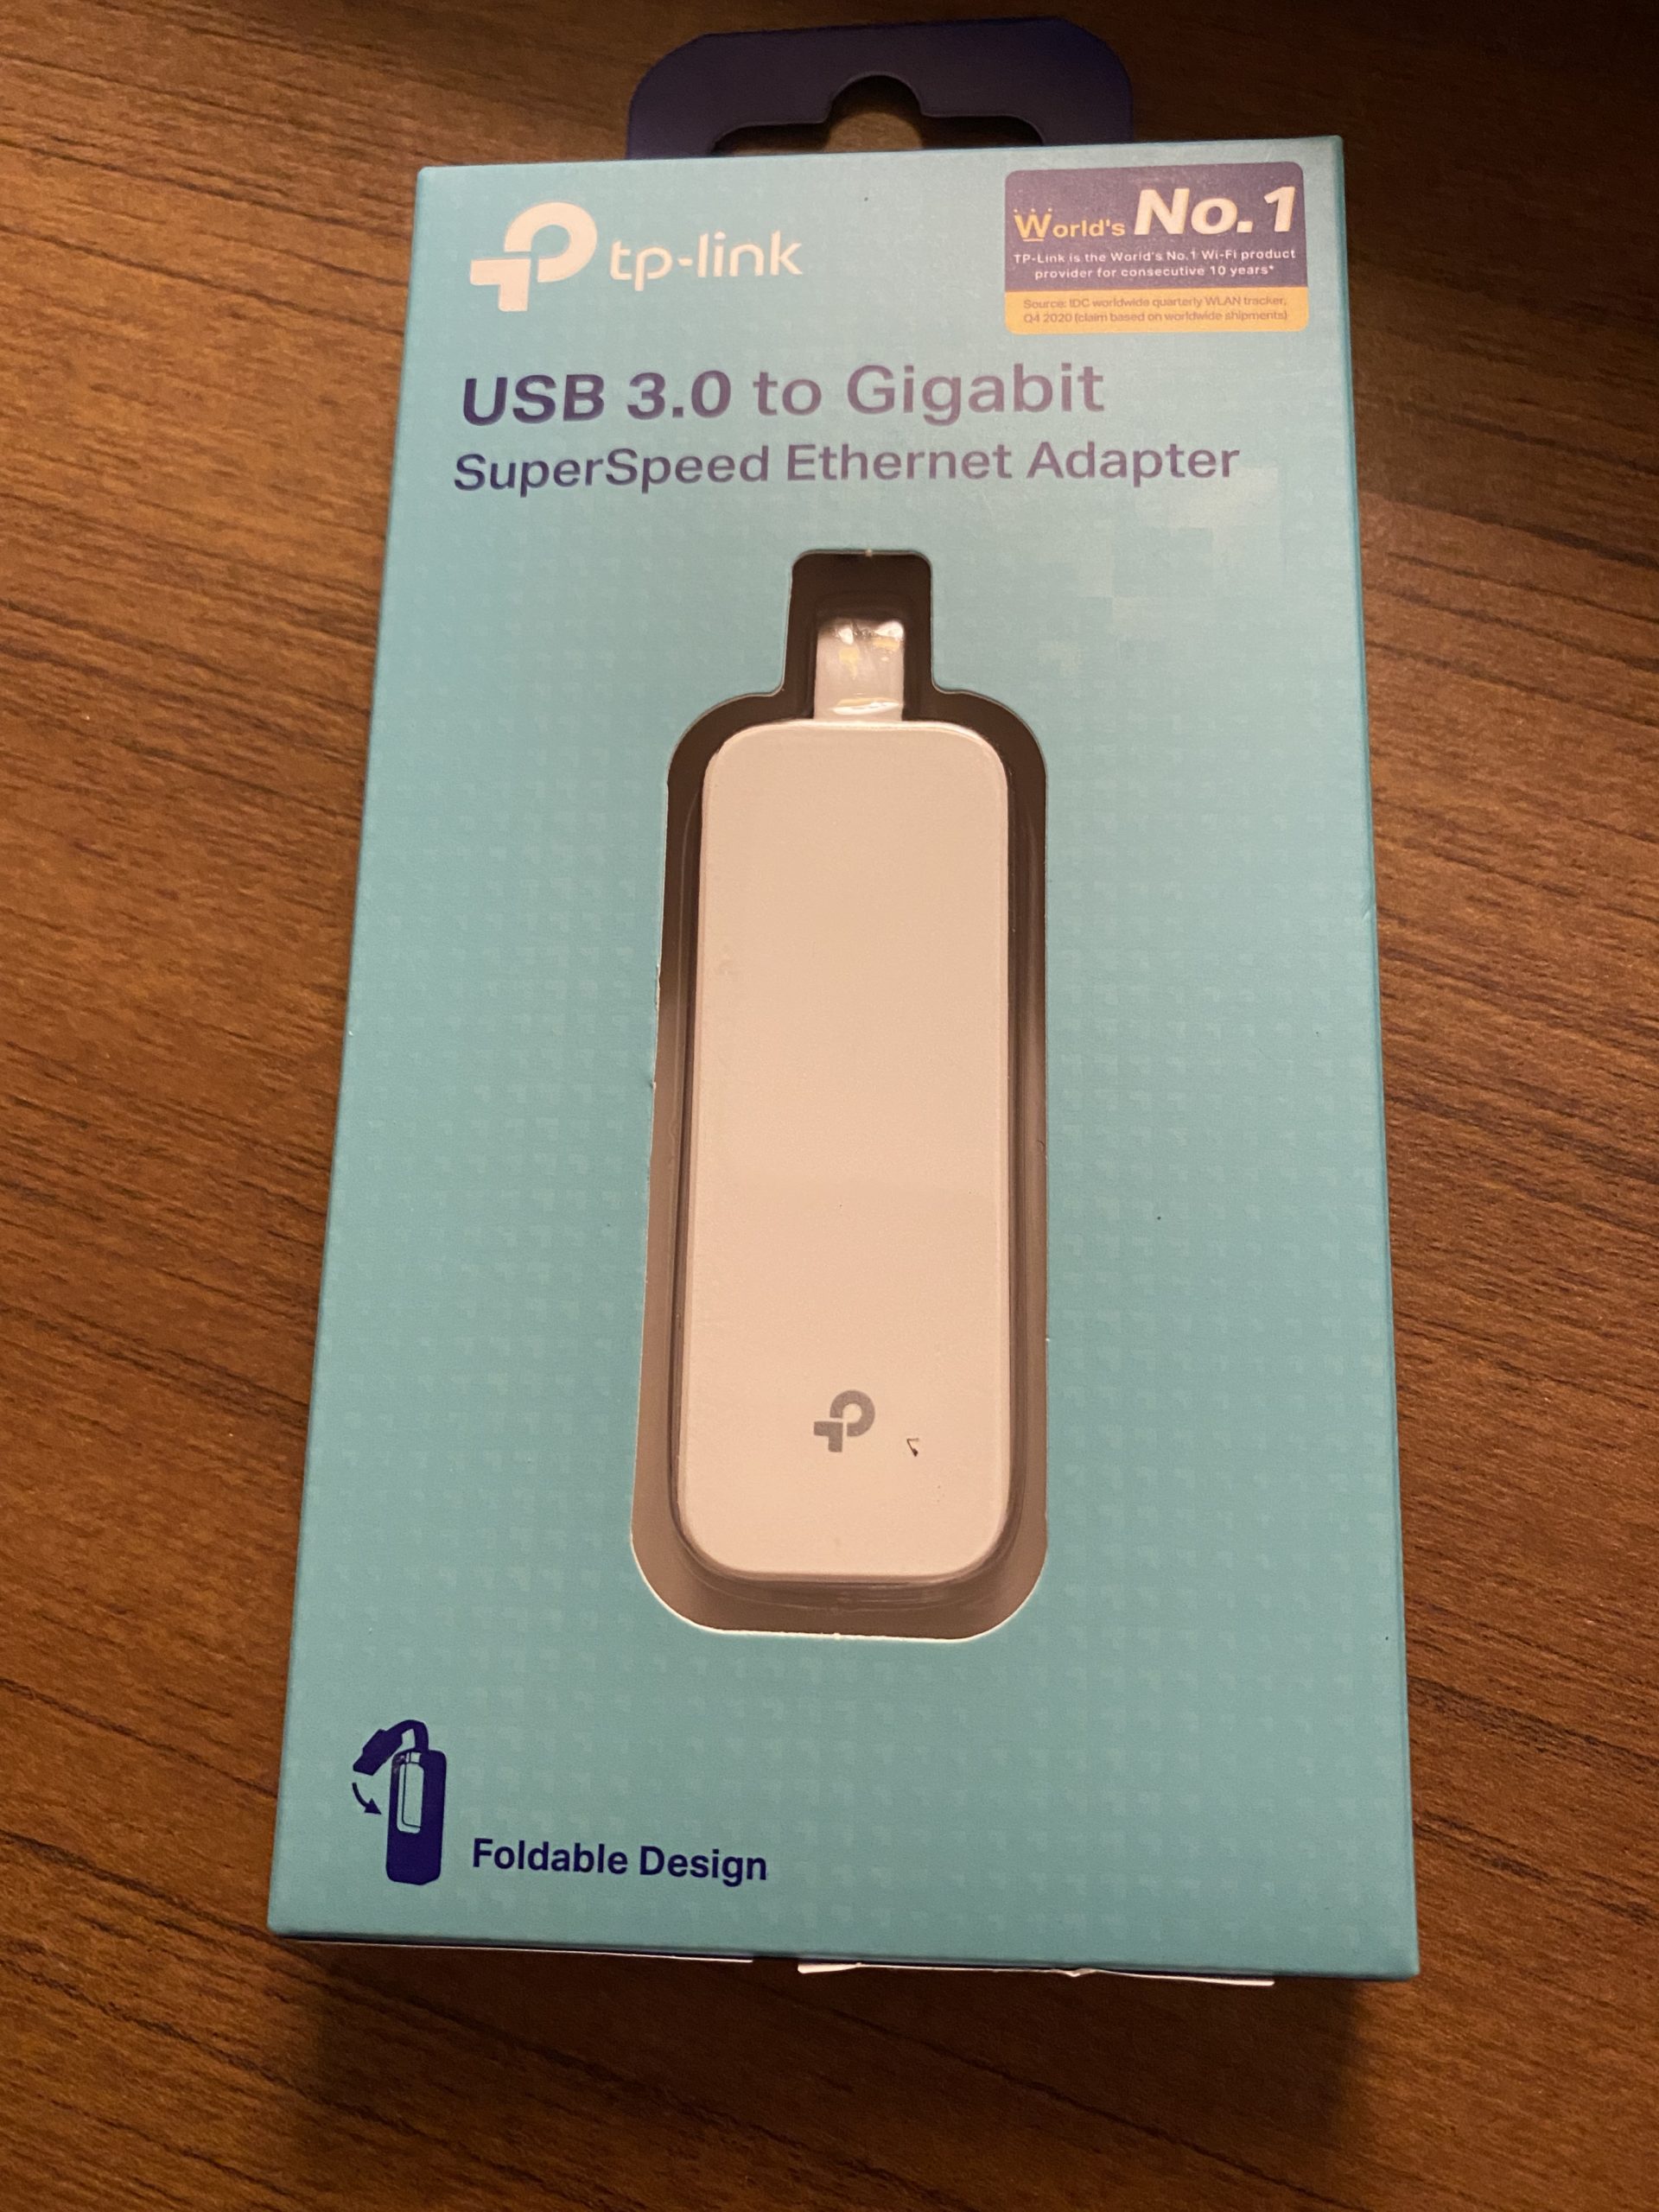 a box of usb flash drive